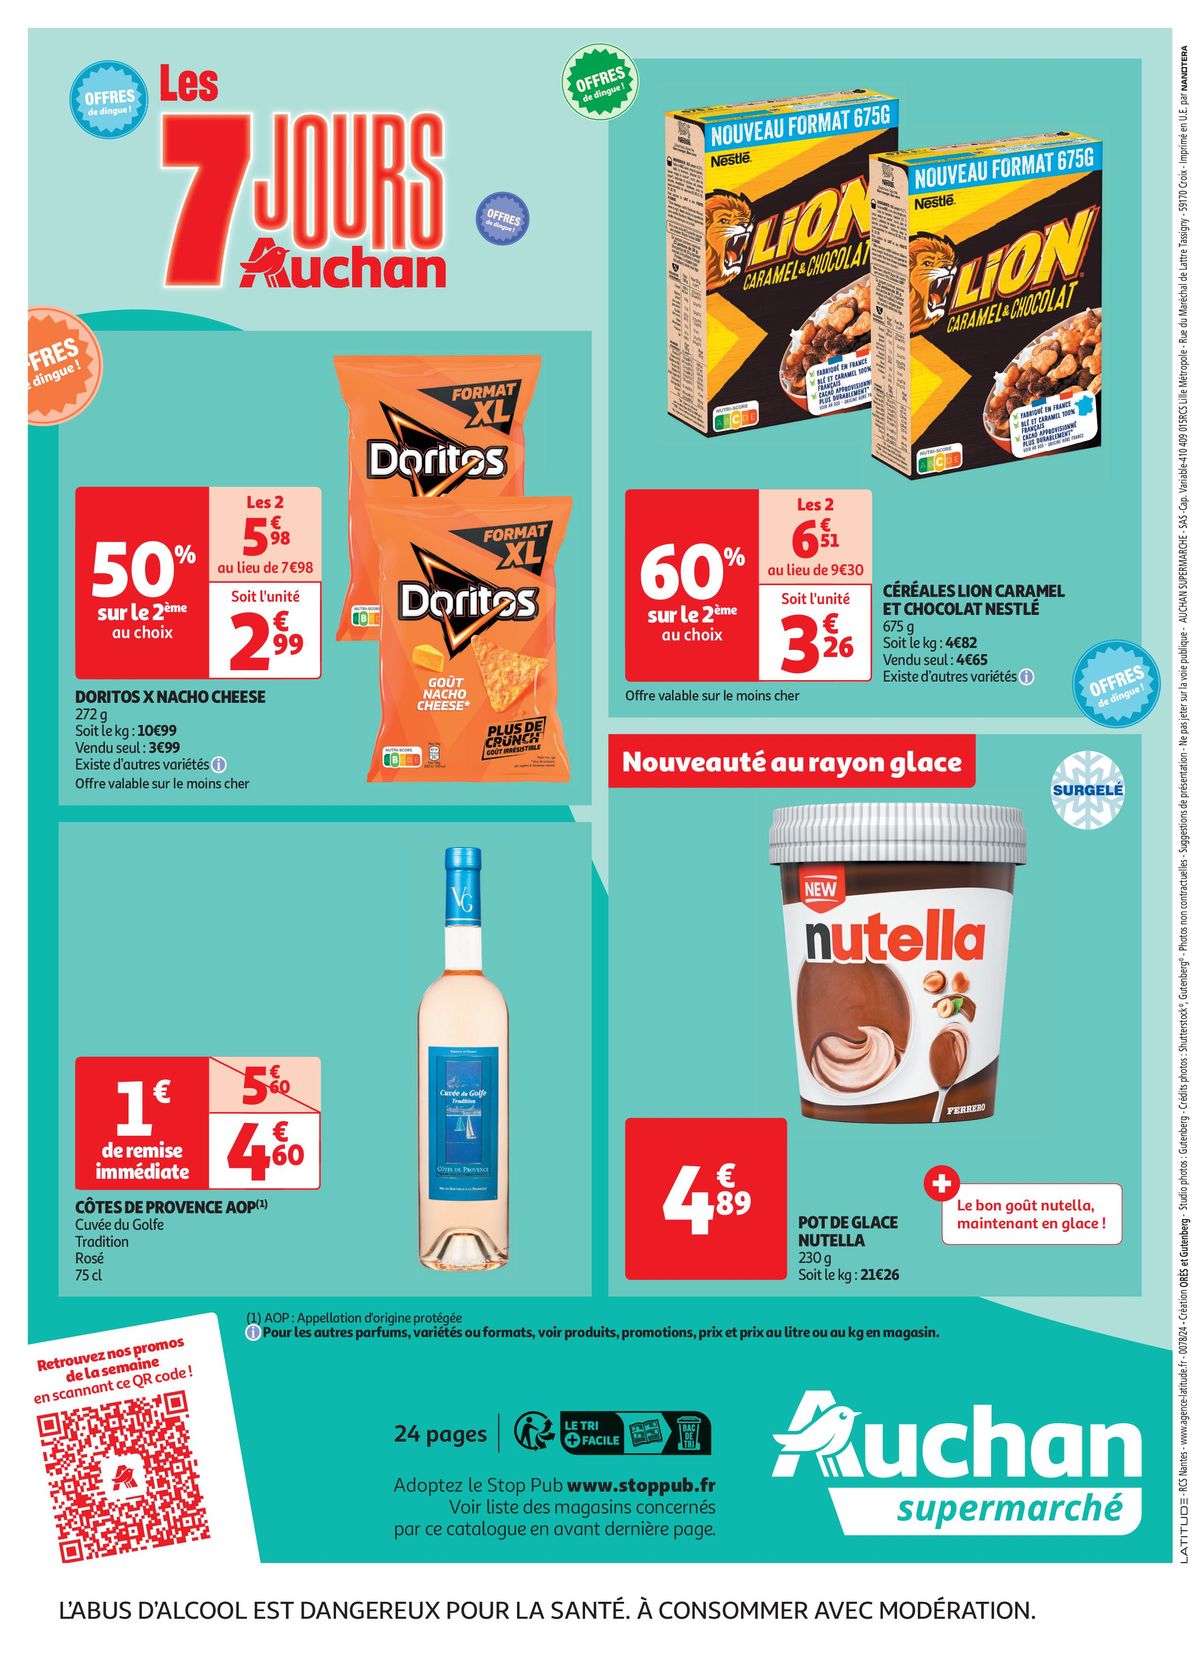 Catalogue C'est les 7 jours Auchan dans votre super !, page 00024